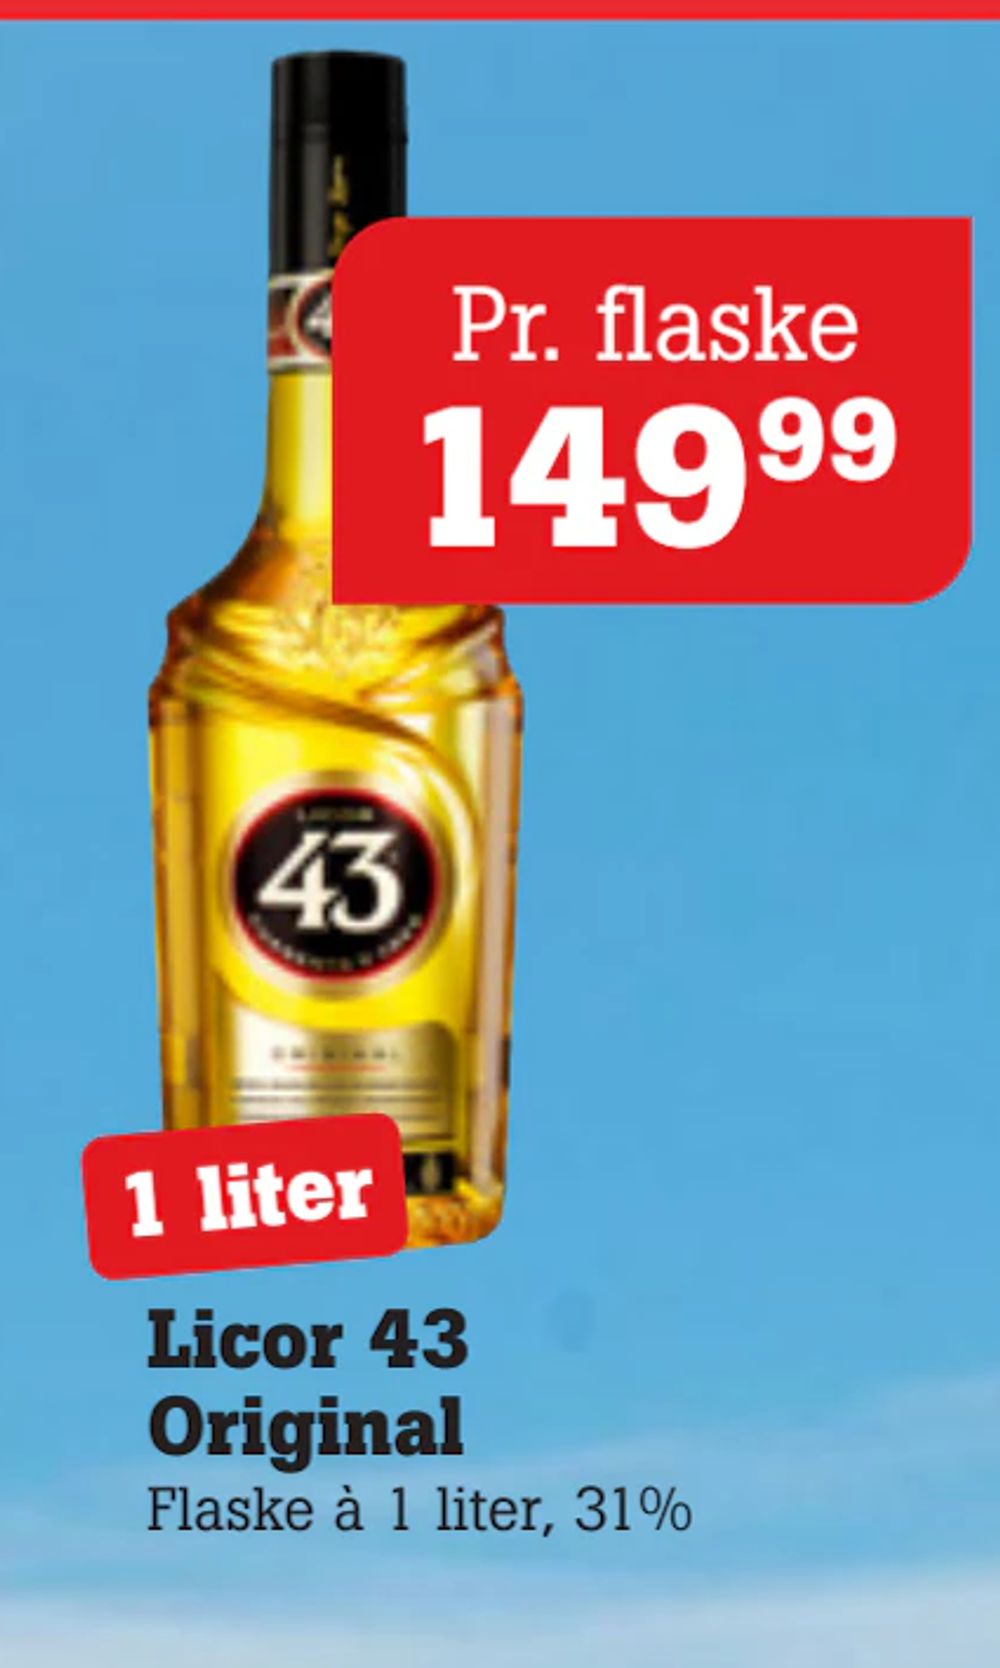 Tilbud på Licor 43 Original fra Poetzsch Padborg til 149,99 kr.